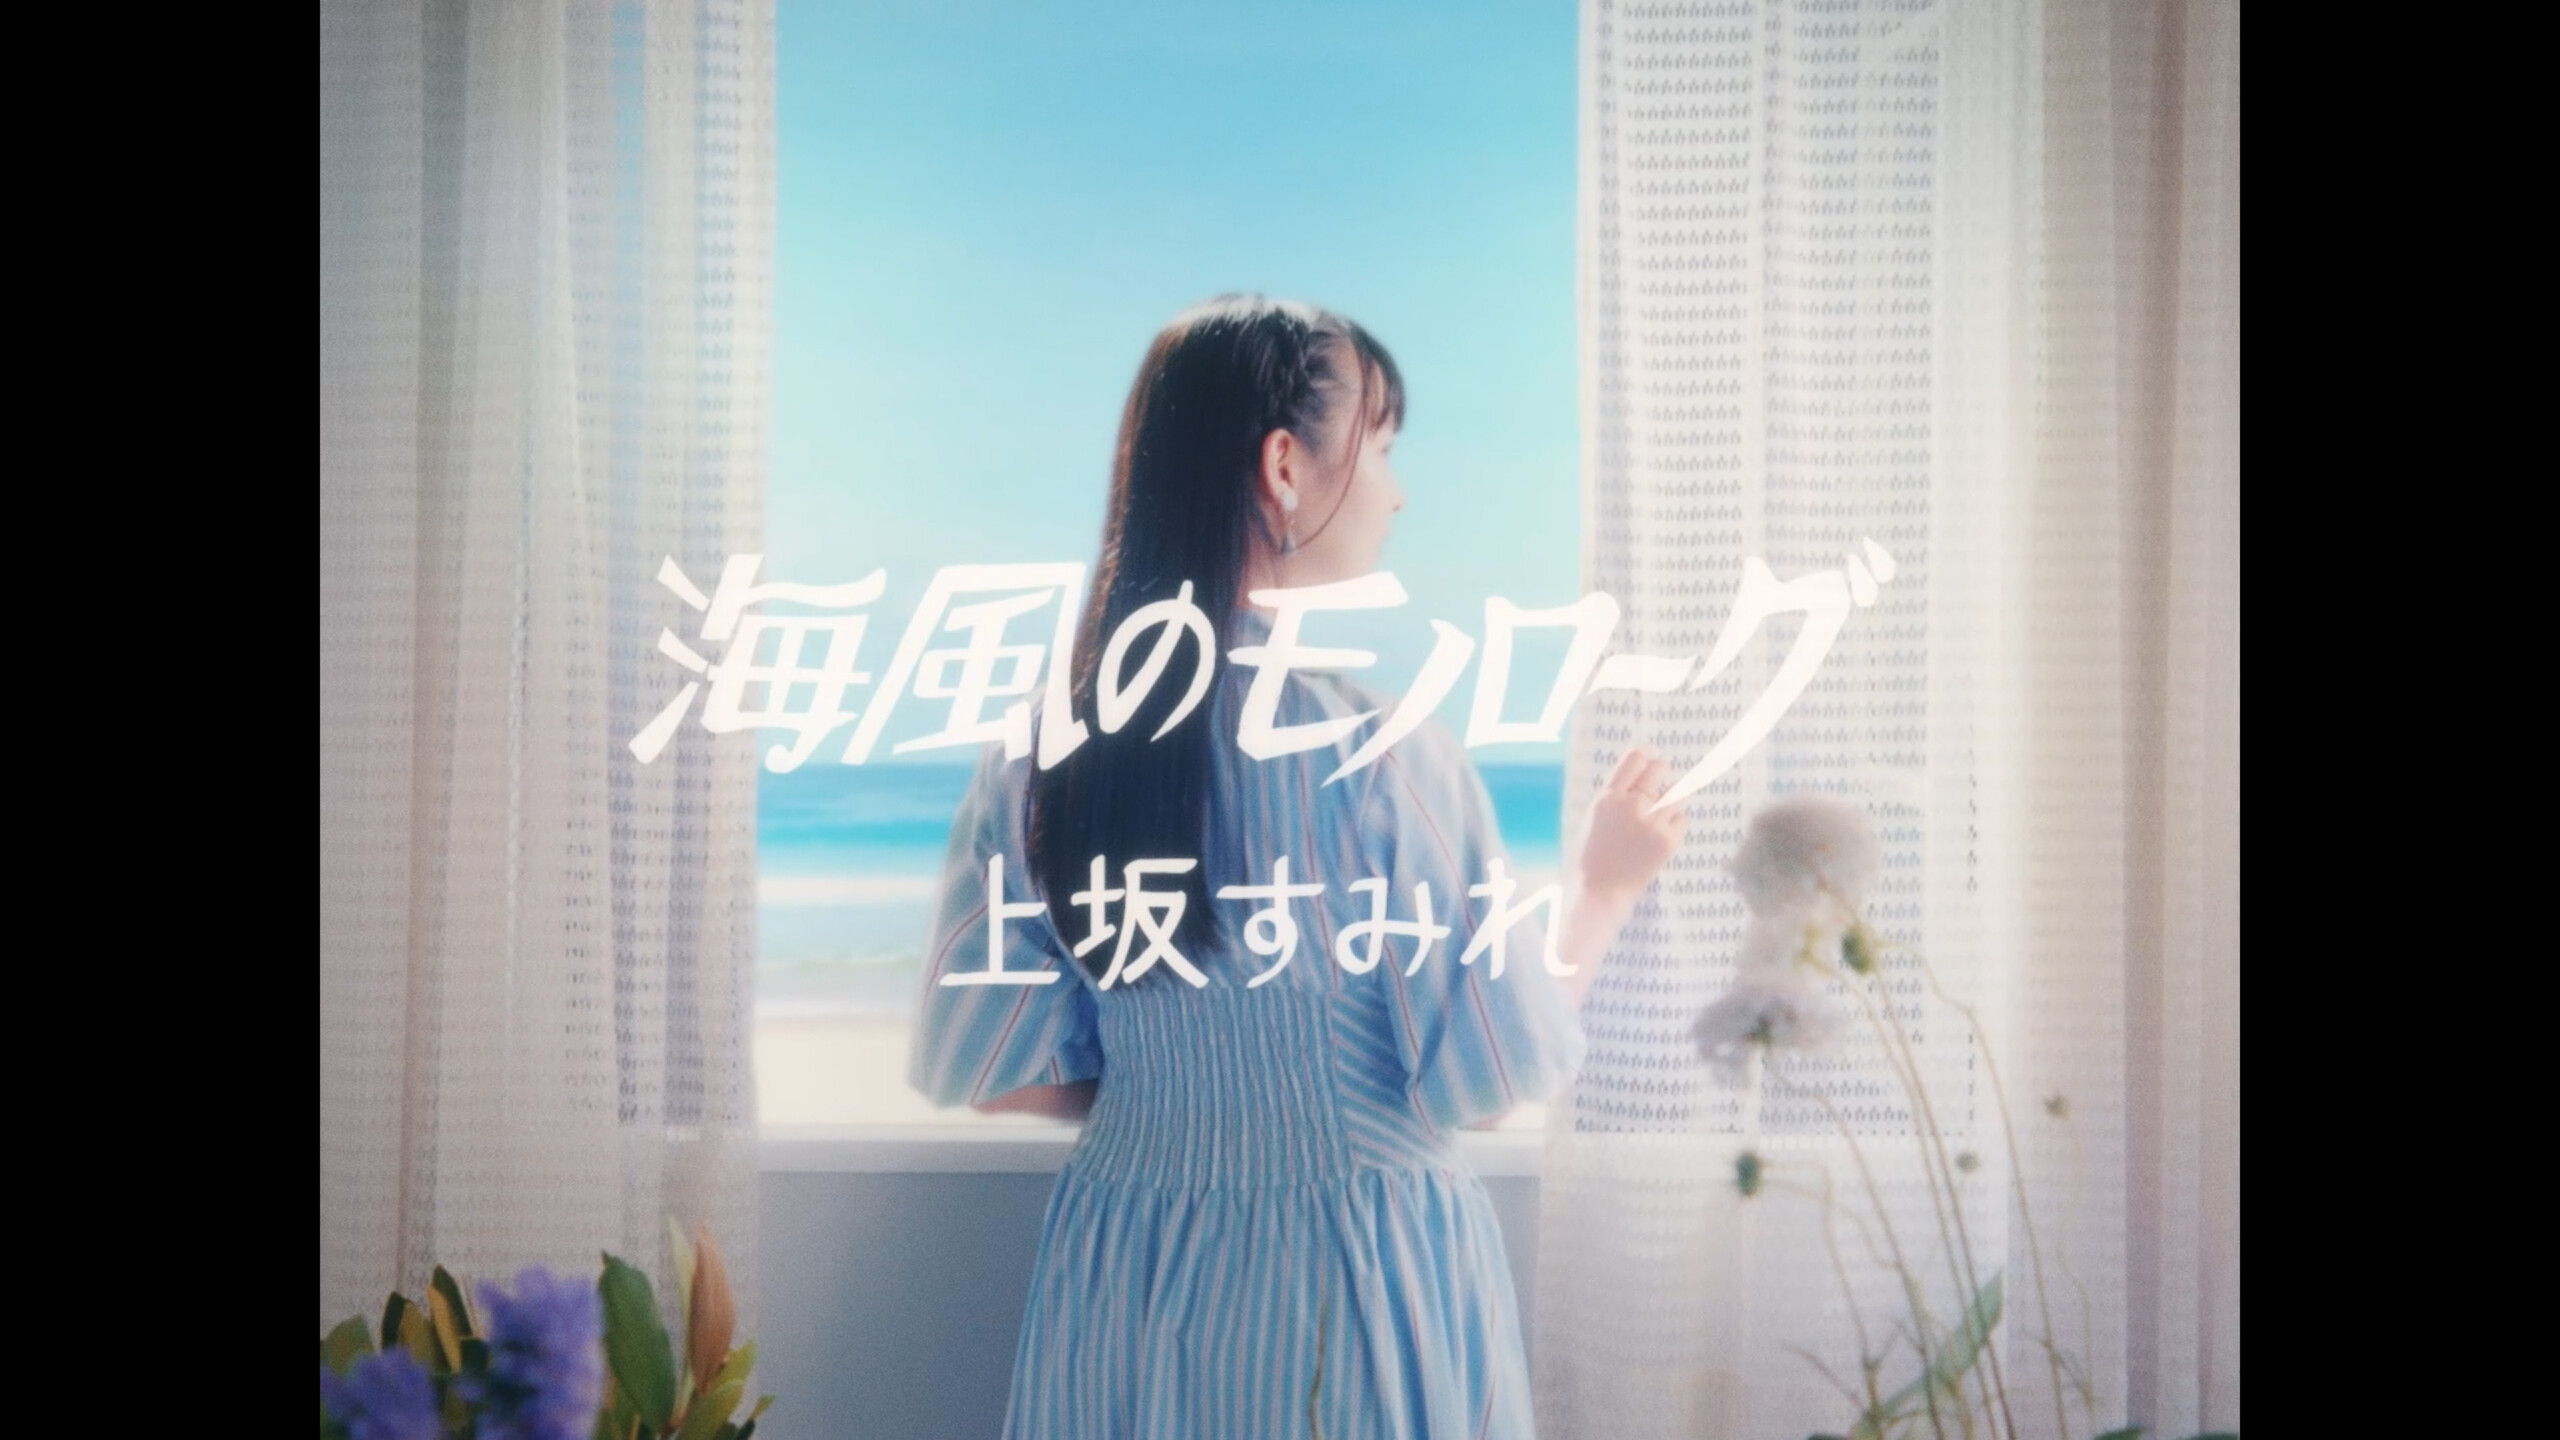 上坂すみれ 10月26日(水)発売5th ALBUM『ANTHOLOGY 